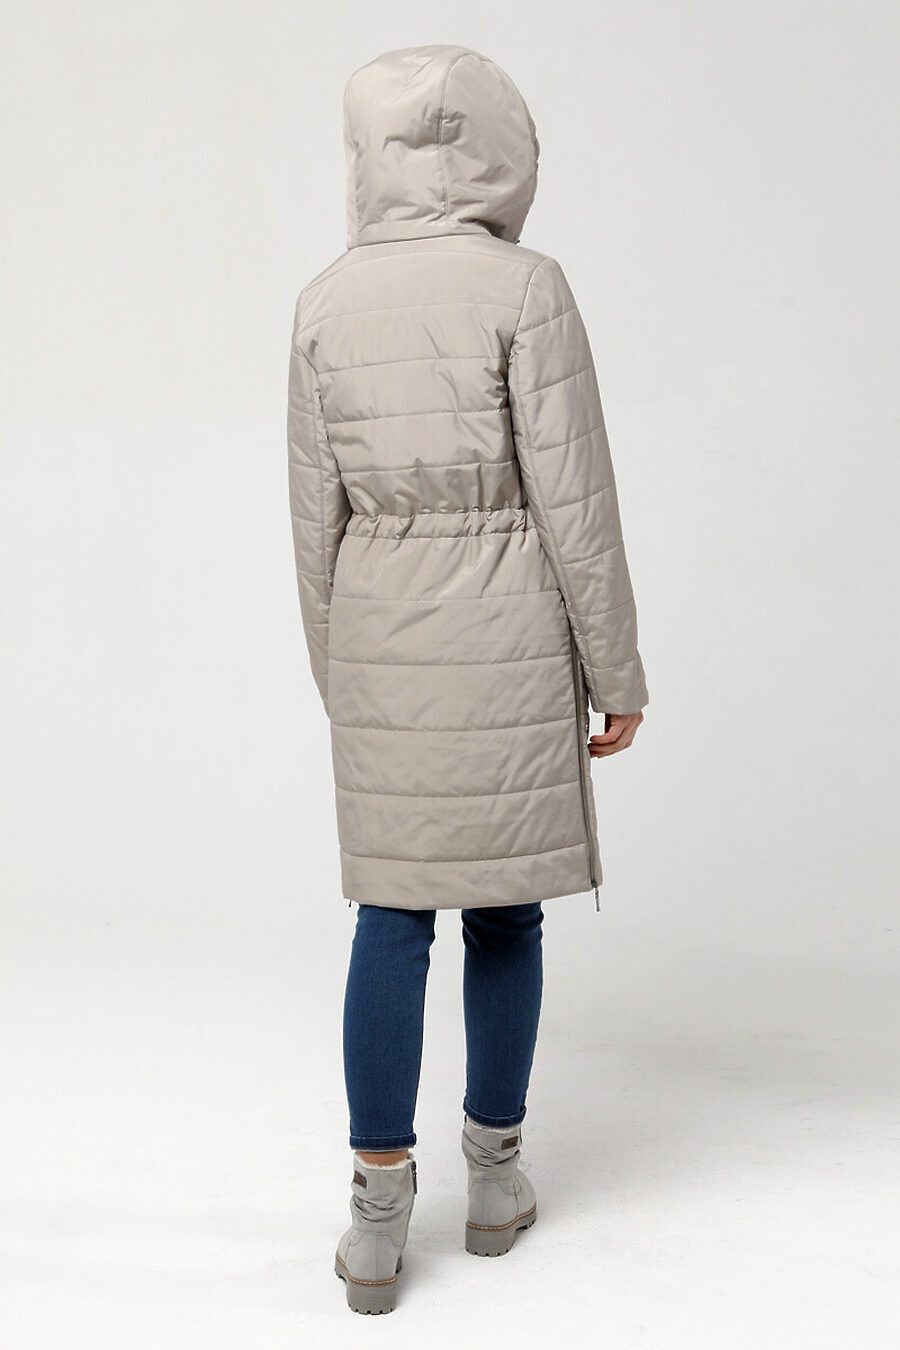 Пальто DIWAY (684816), купить в Moyo.moda